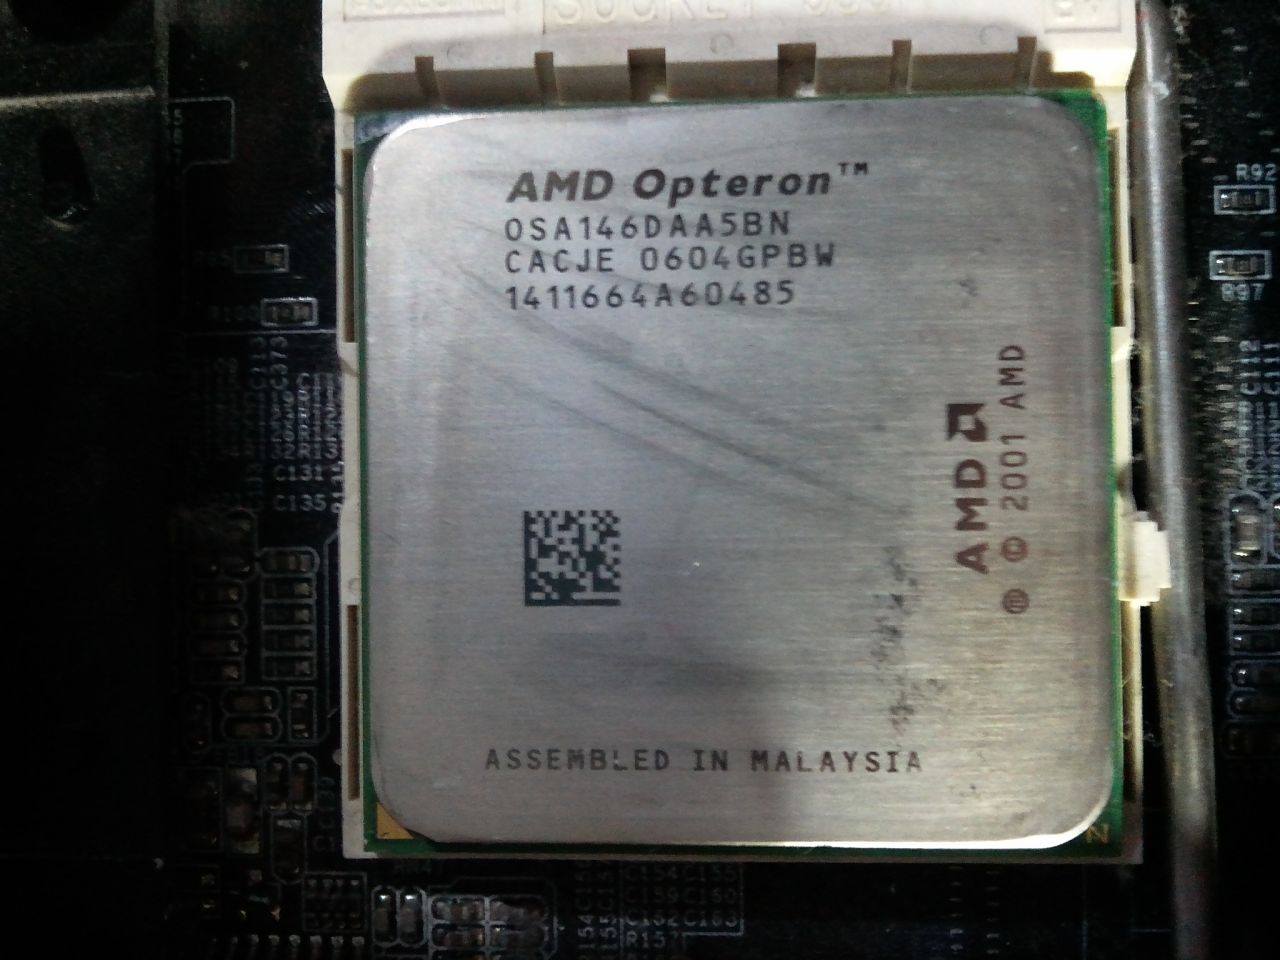 CPU+MB(AGP)